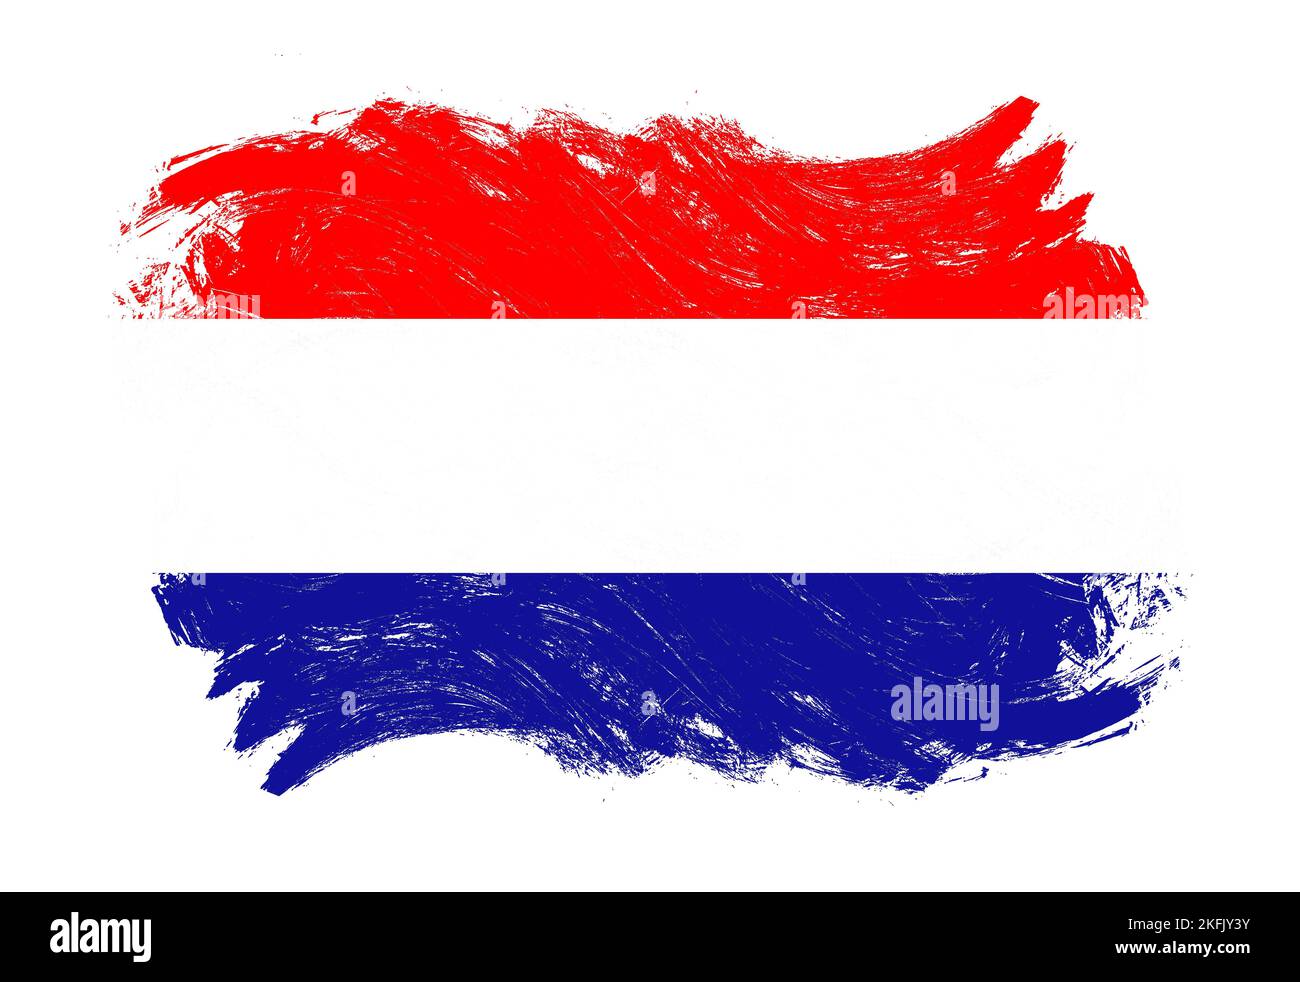 Croatia flag on distressed grunge white stroke brush background Stock Photo